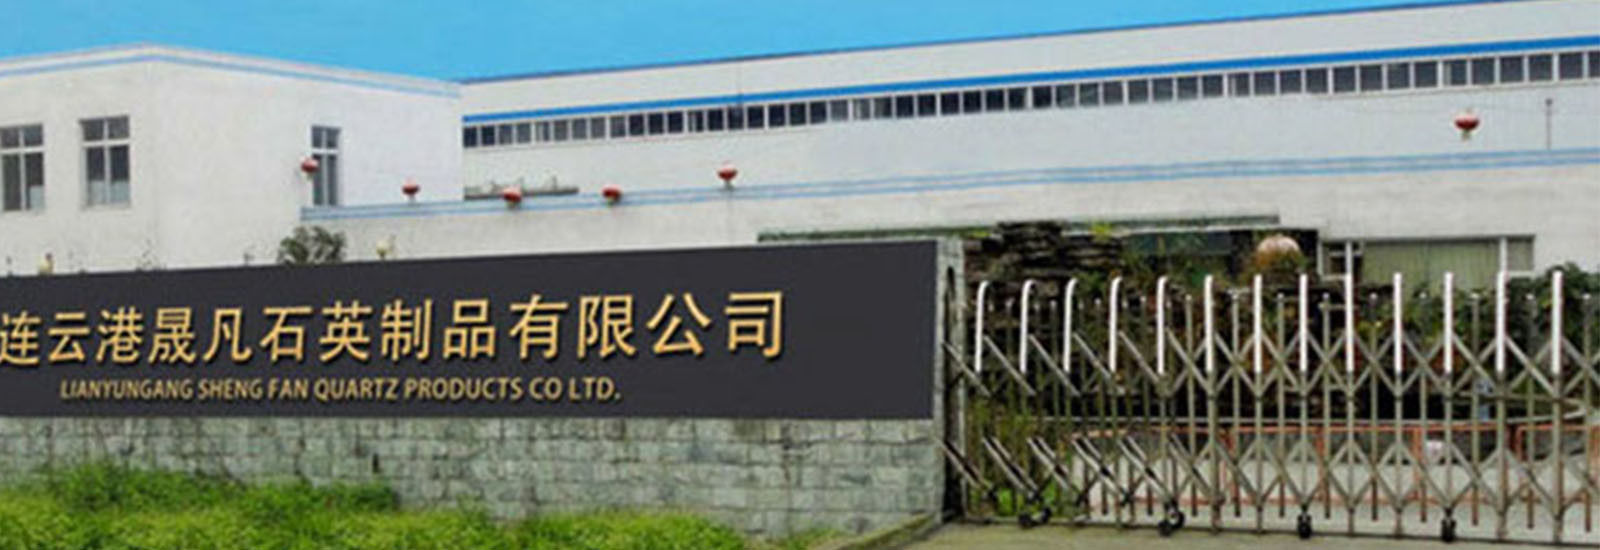 Cina Lianyungang Shengfan Quartz Product Co., Ltd Profil Perusahaan